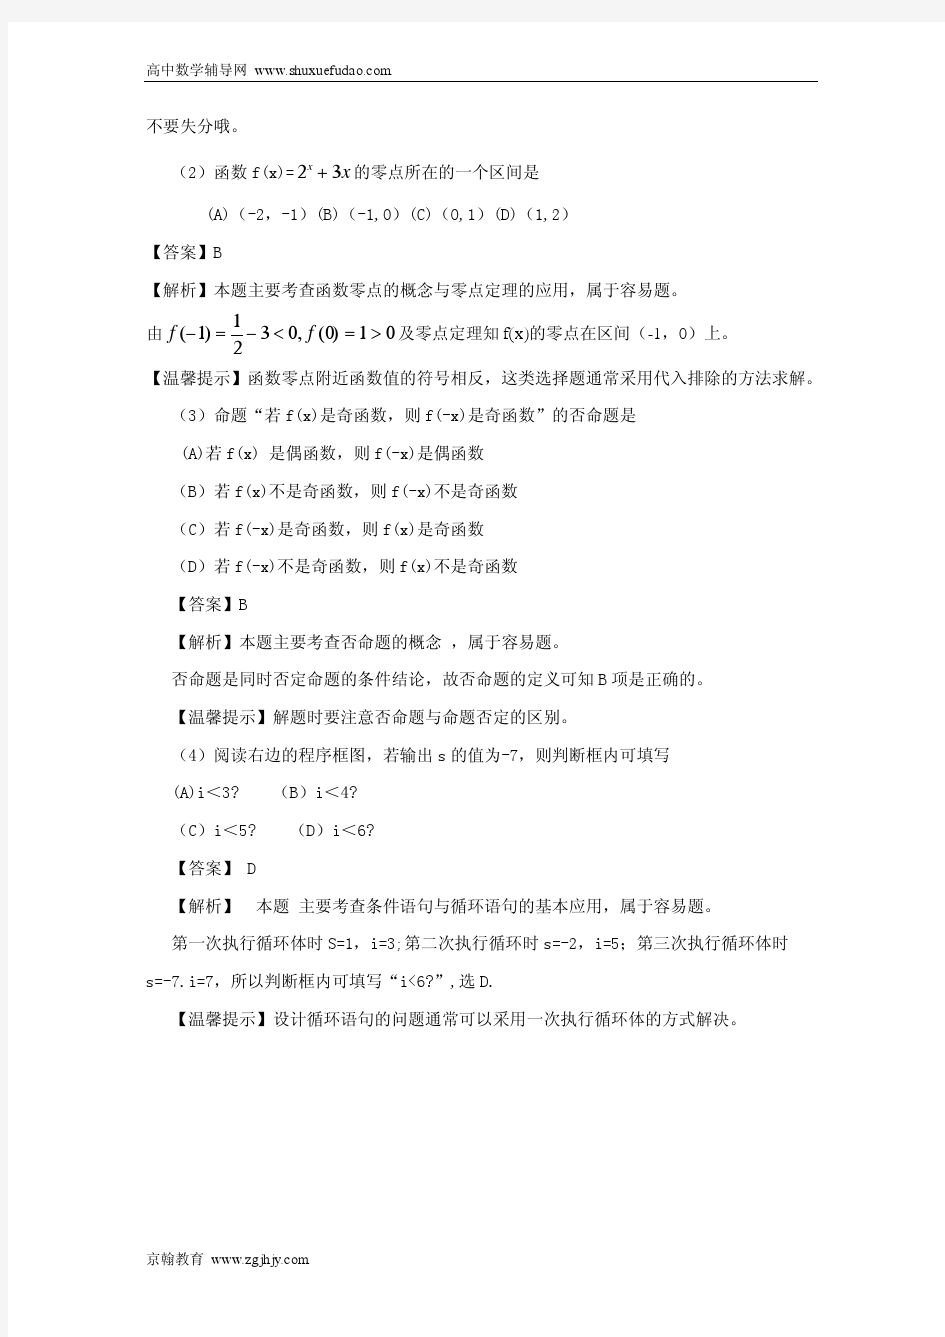 2010年高考数学理科试题解析版(天津卷)